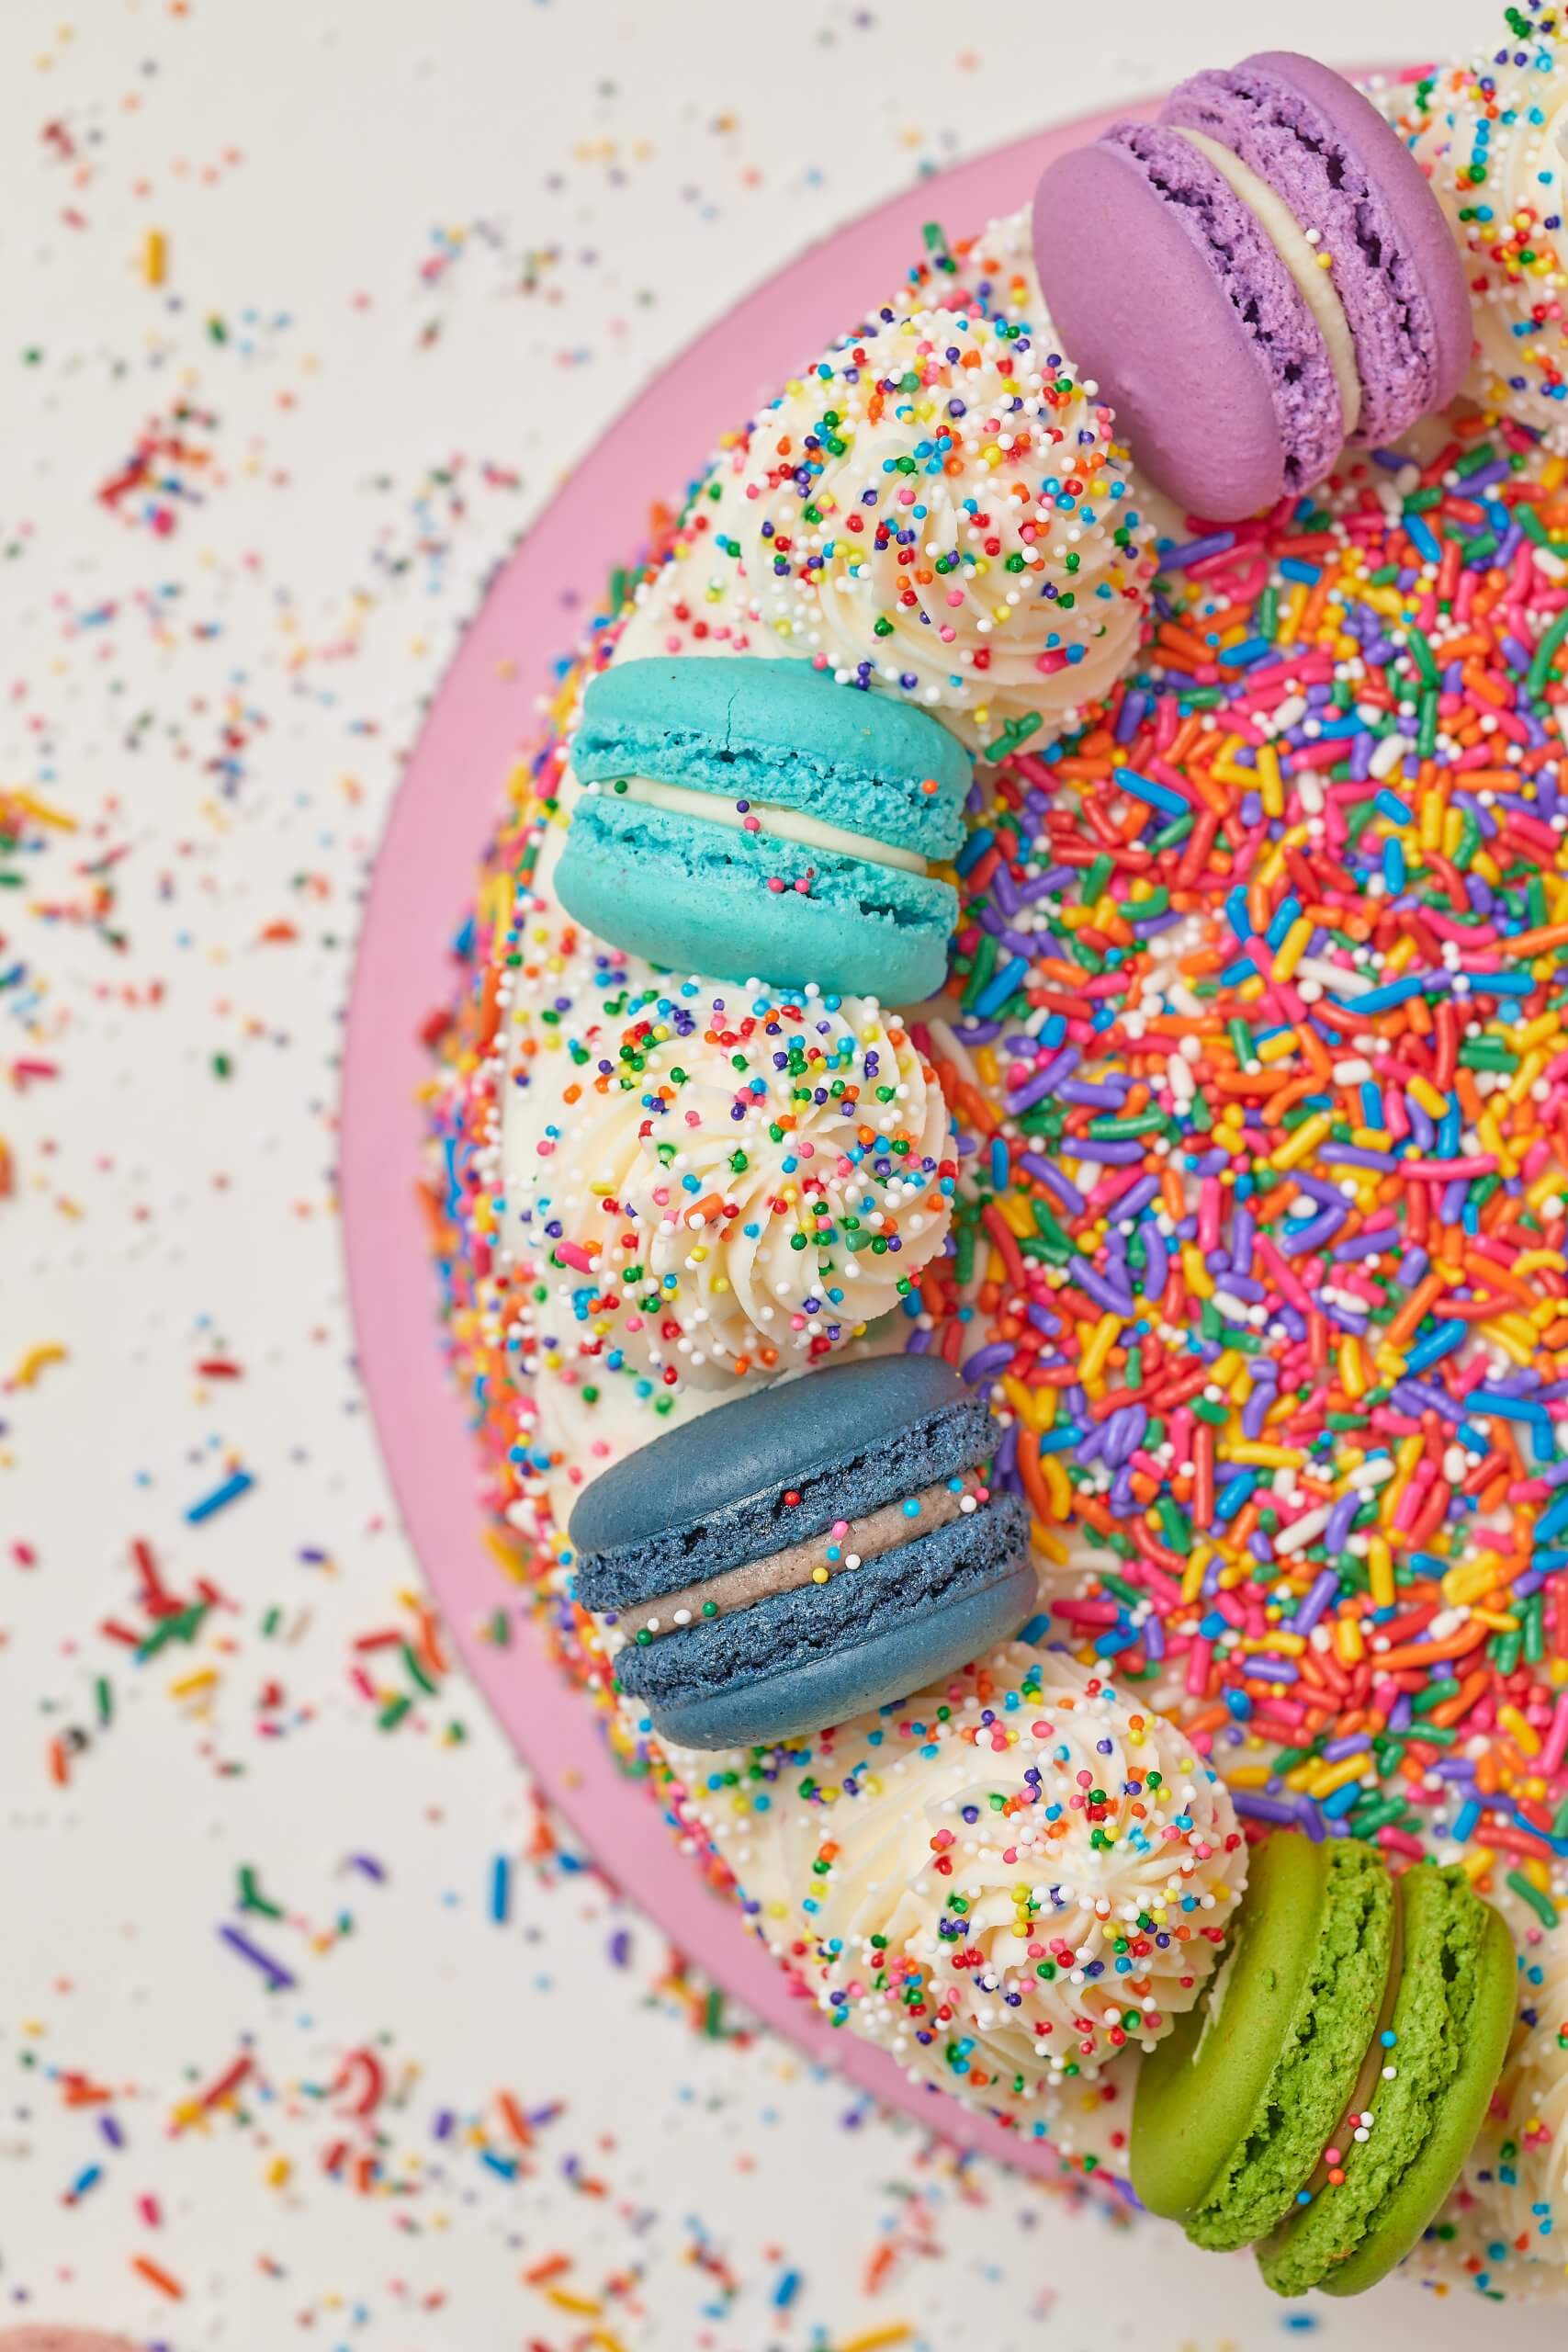 Magia Sprinkles – Miami Cake Dummies